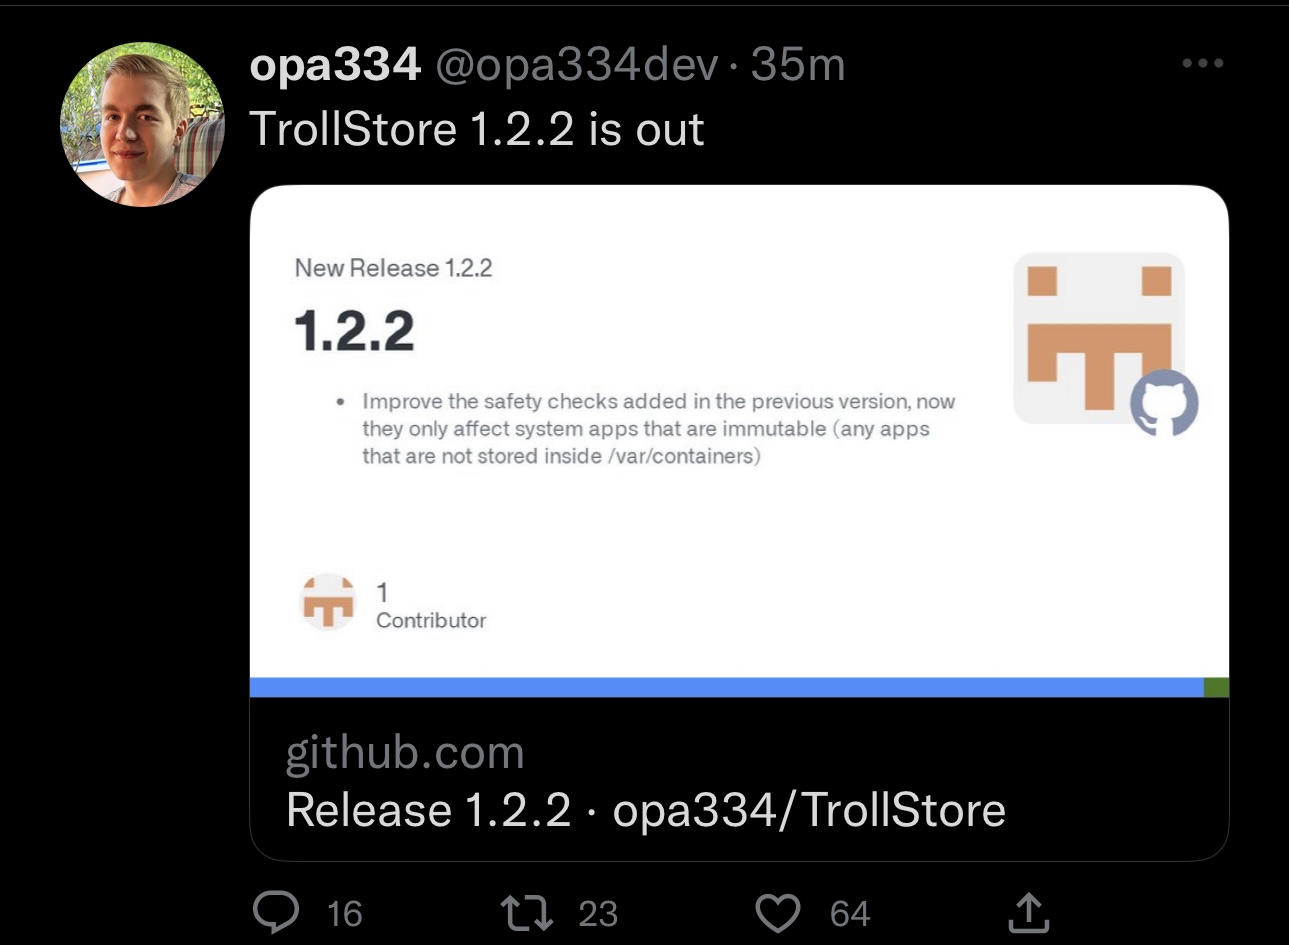 Opa334 announces the TrollStore v1.2.2 update.